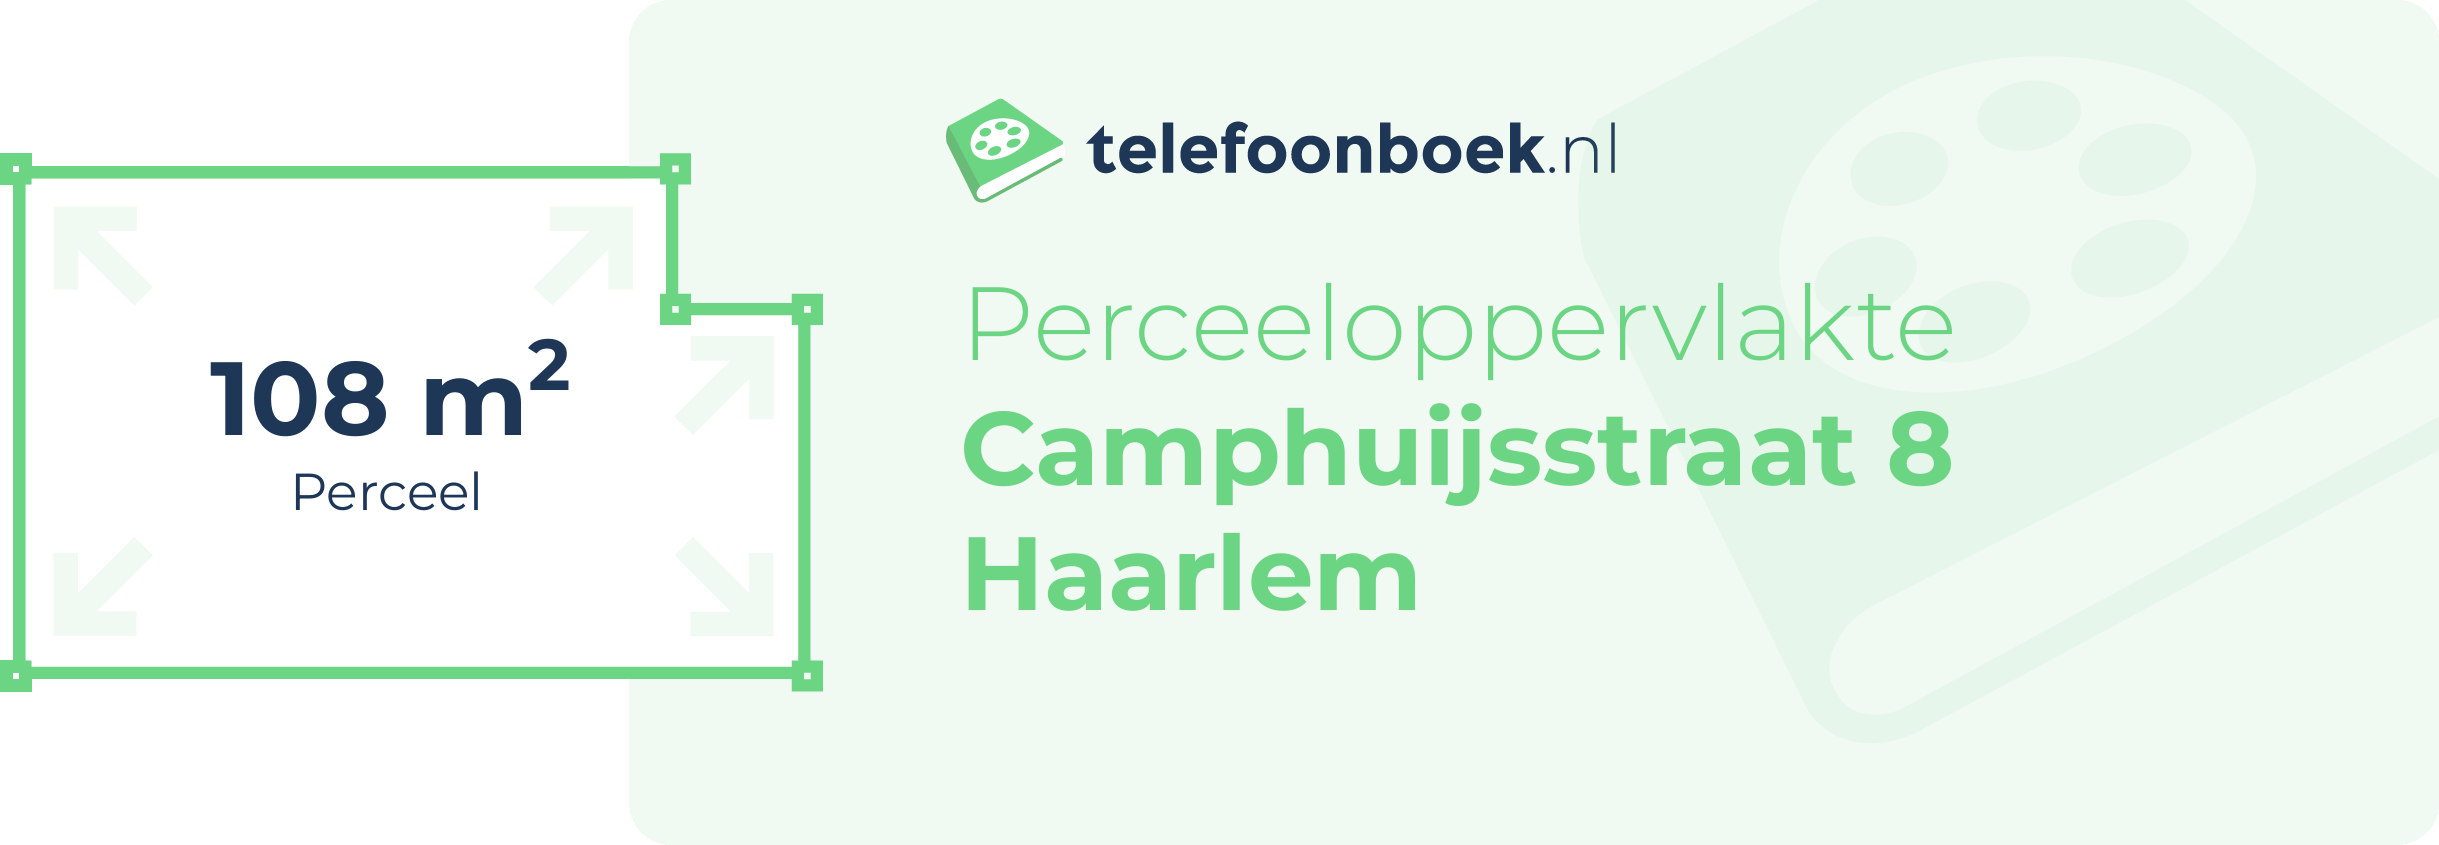 Perceeloppervlakte Camphuijsstraat 8 Haarlem